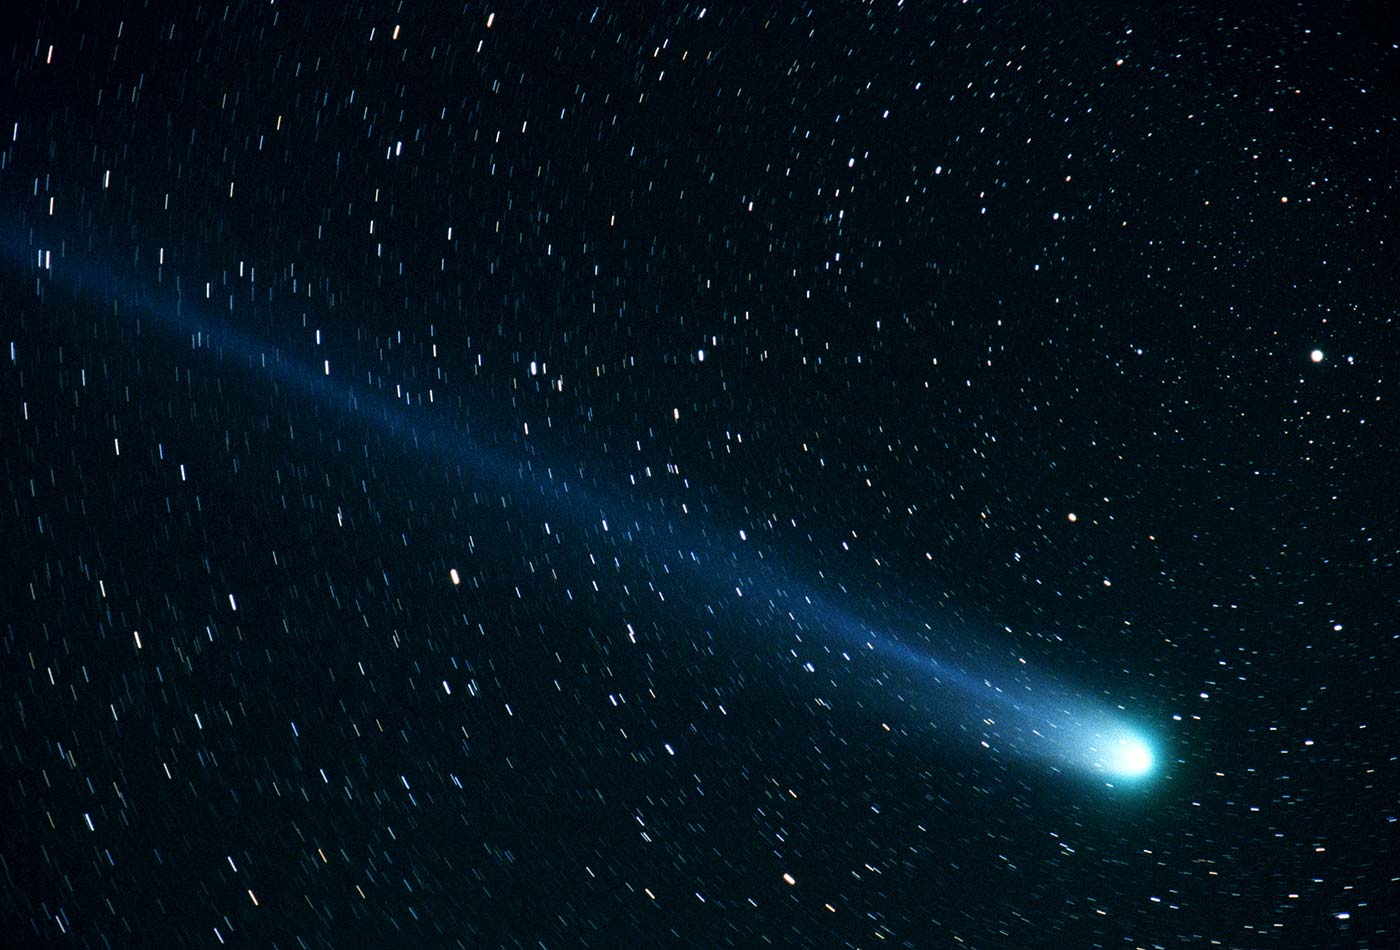 Comet Hyakutake by NASA photographer Bill Ingalls.